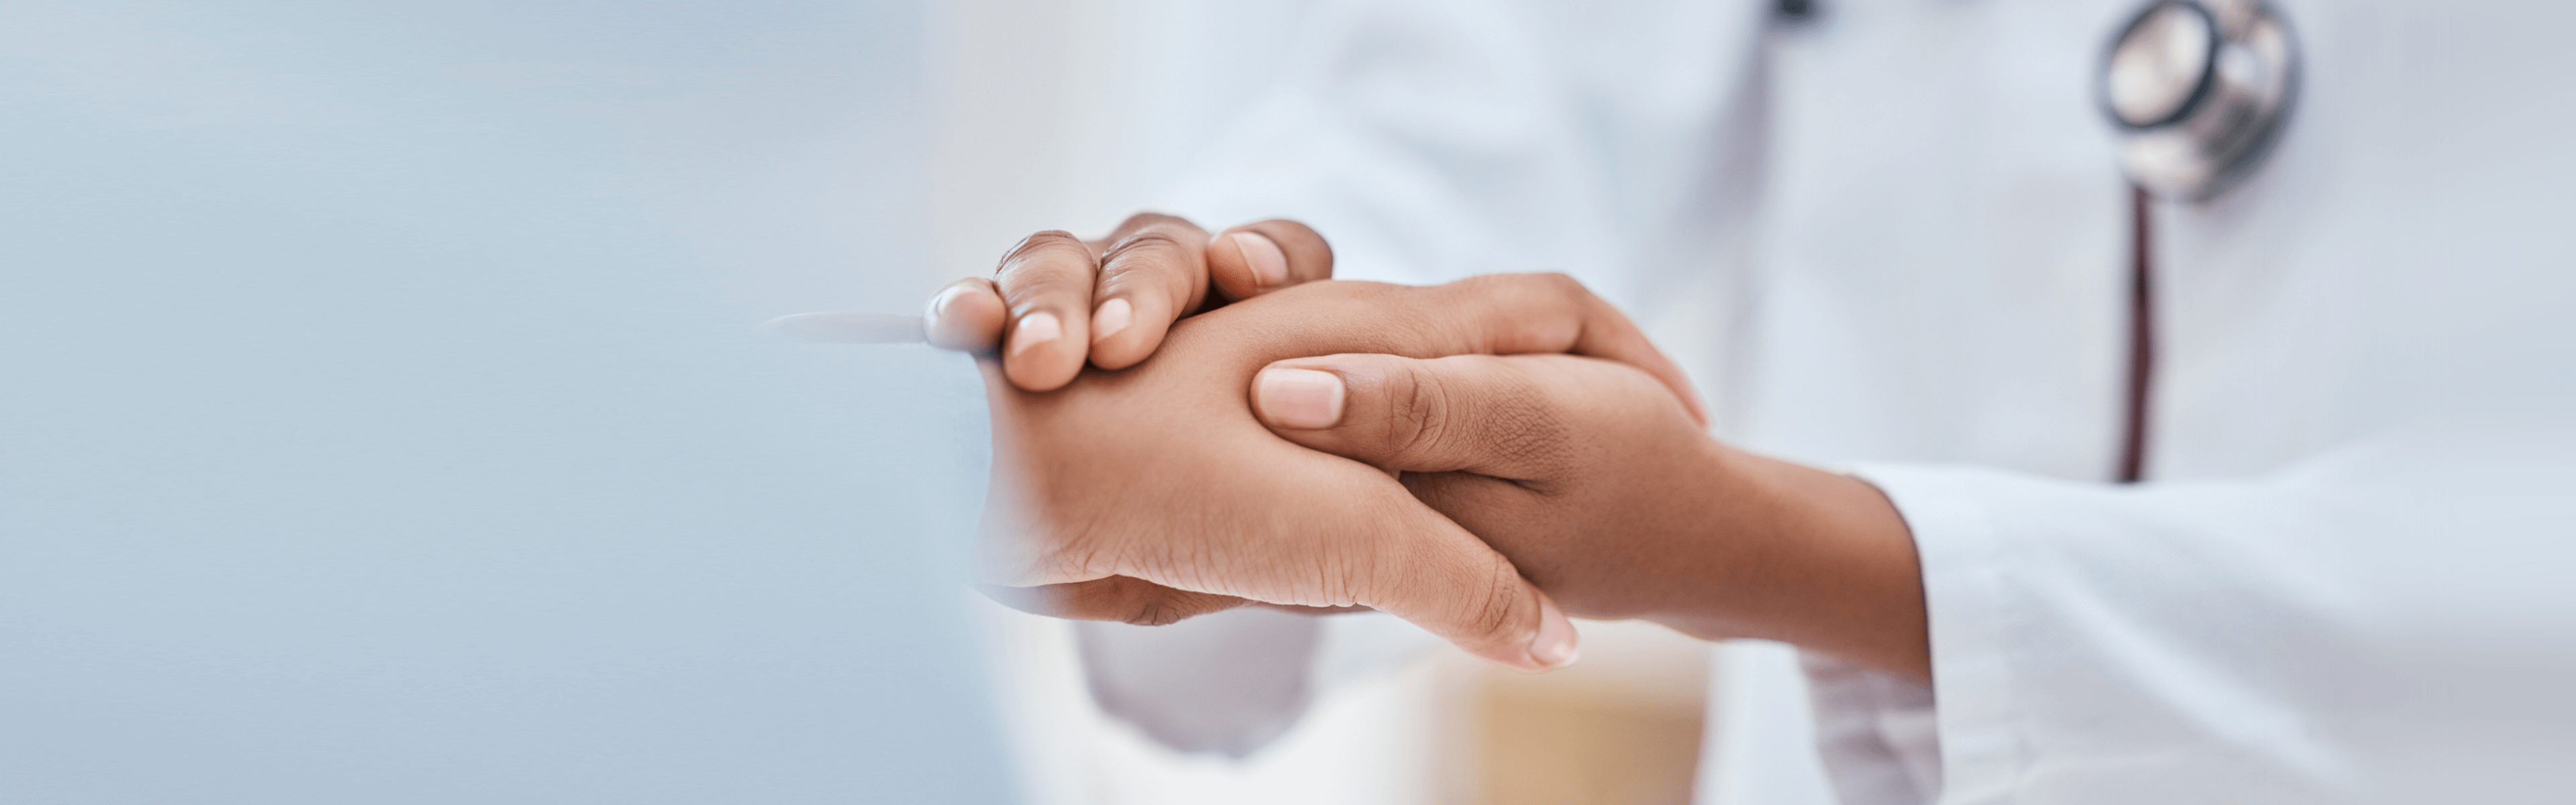 Hände eines Arztes hält unterstützend die Hand des Patienten